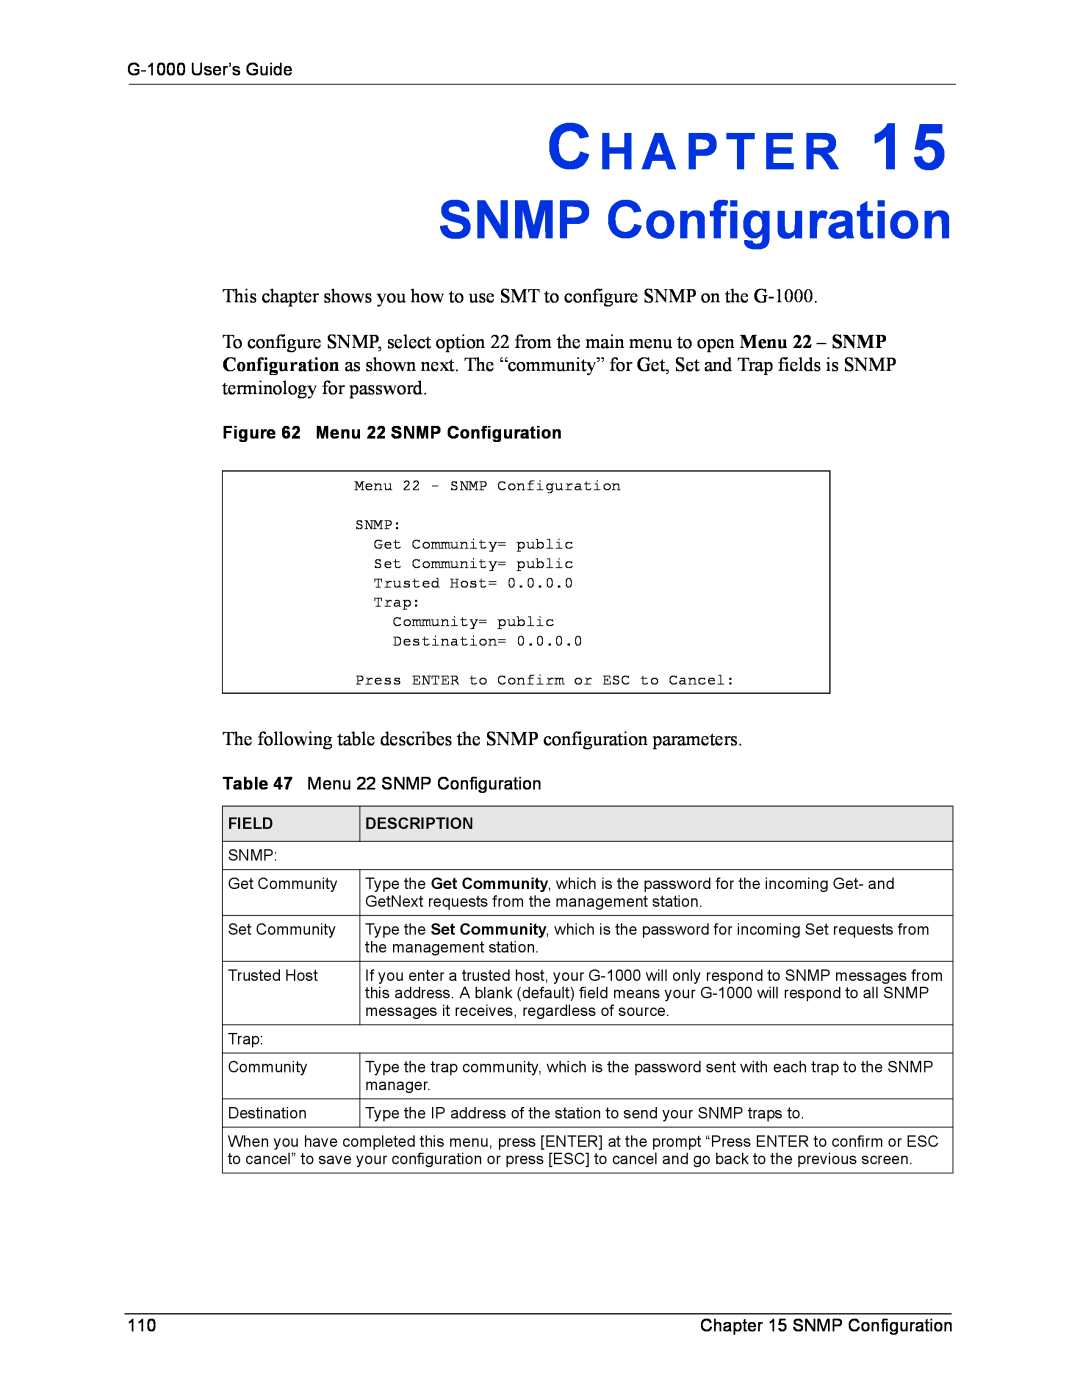 ZyXEL Communications manual Ch A P T E R, G-1000 User’s Guide, Menu 22 SNMP Configuration, Field, Description 